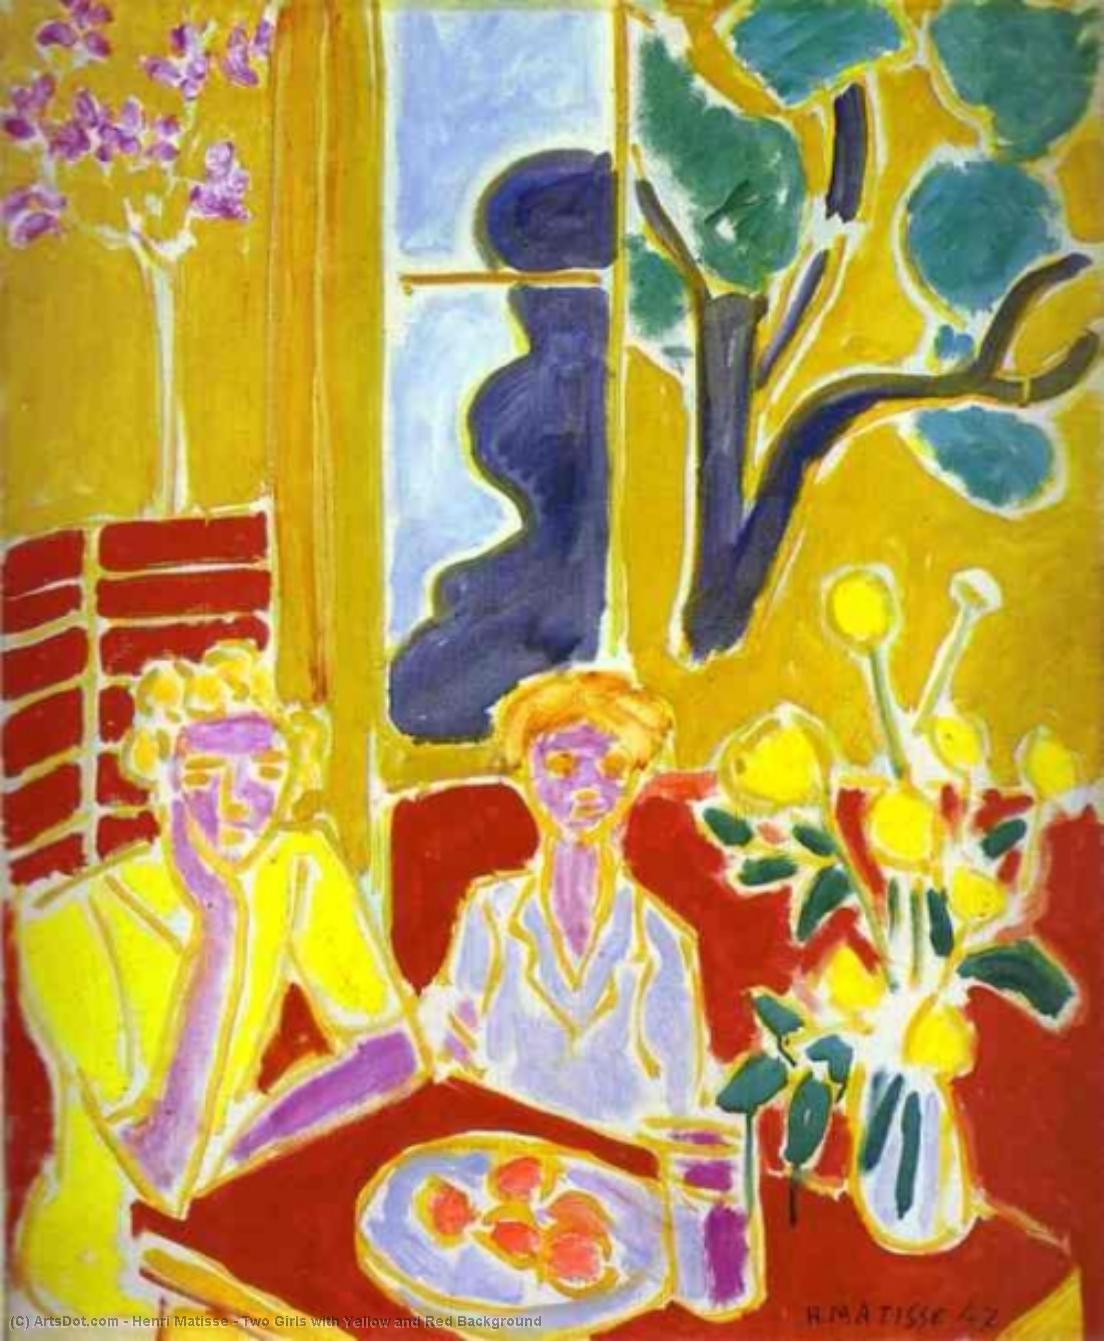 WikiOO.org - Енциклопедия за изящни изкуства - Живопис, Произведения на изкуството Henri Matisse - Two Girls with Yellow and Red Background